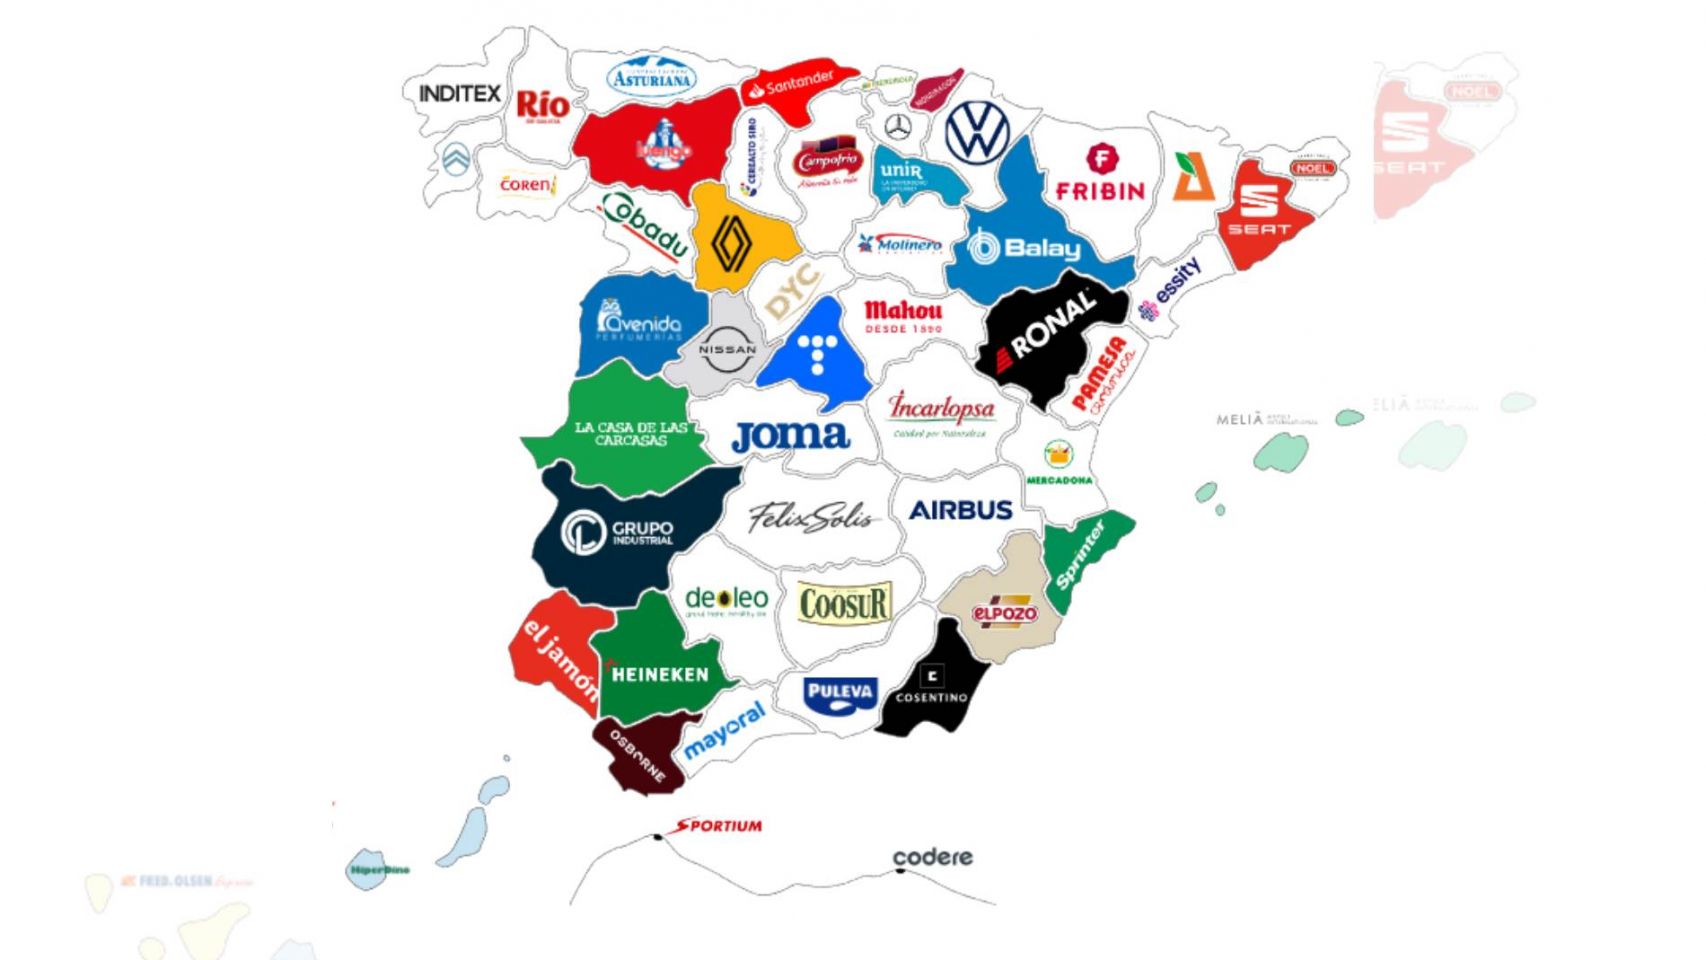 Mapa interactivo sobre las empresas más relevantes de España.